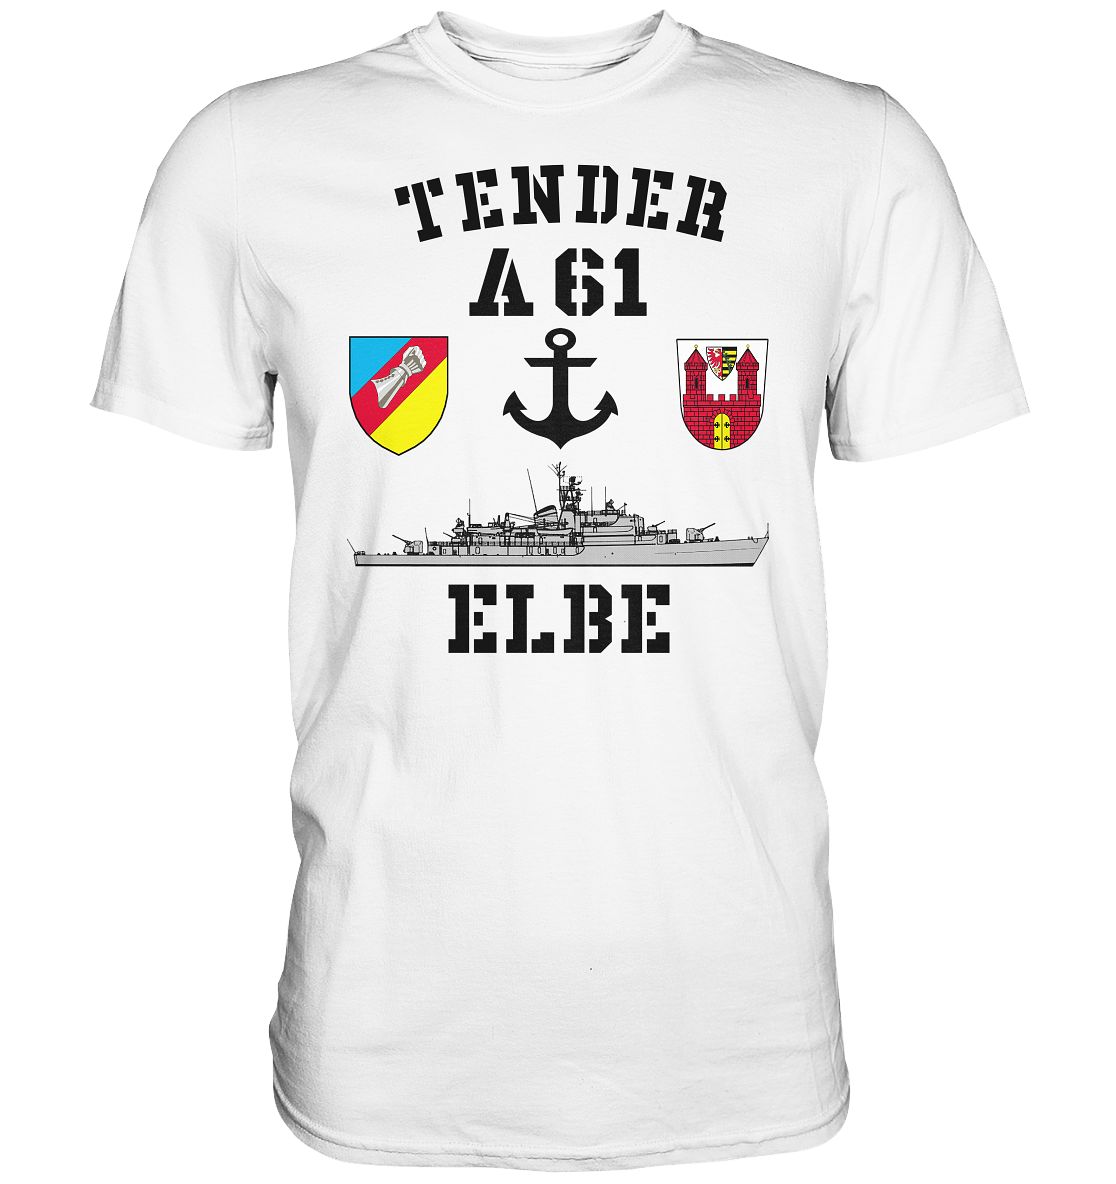 Tender A61 ELBE 2.SG ANKER - Premium Shirt